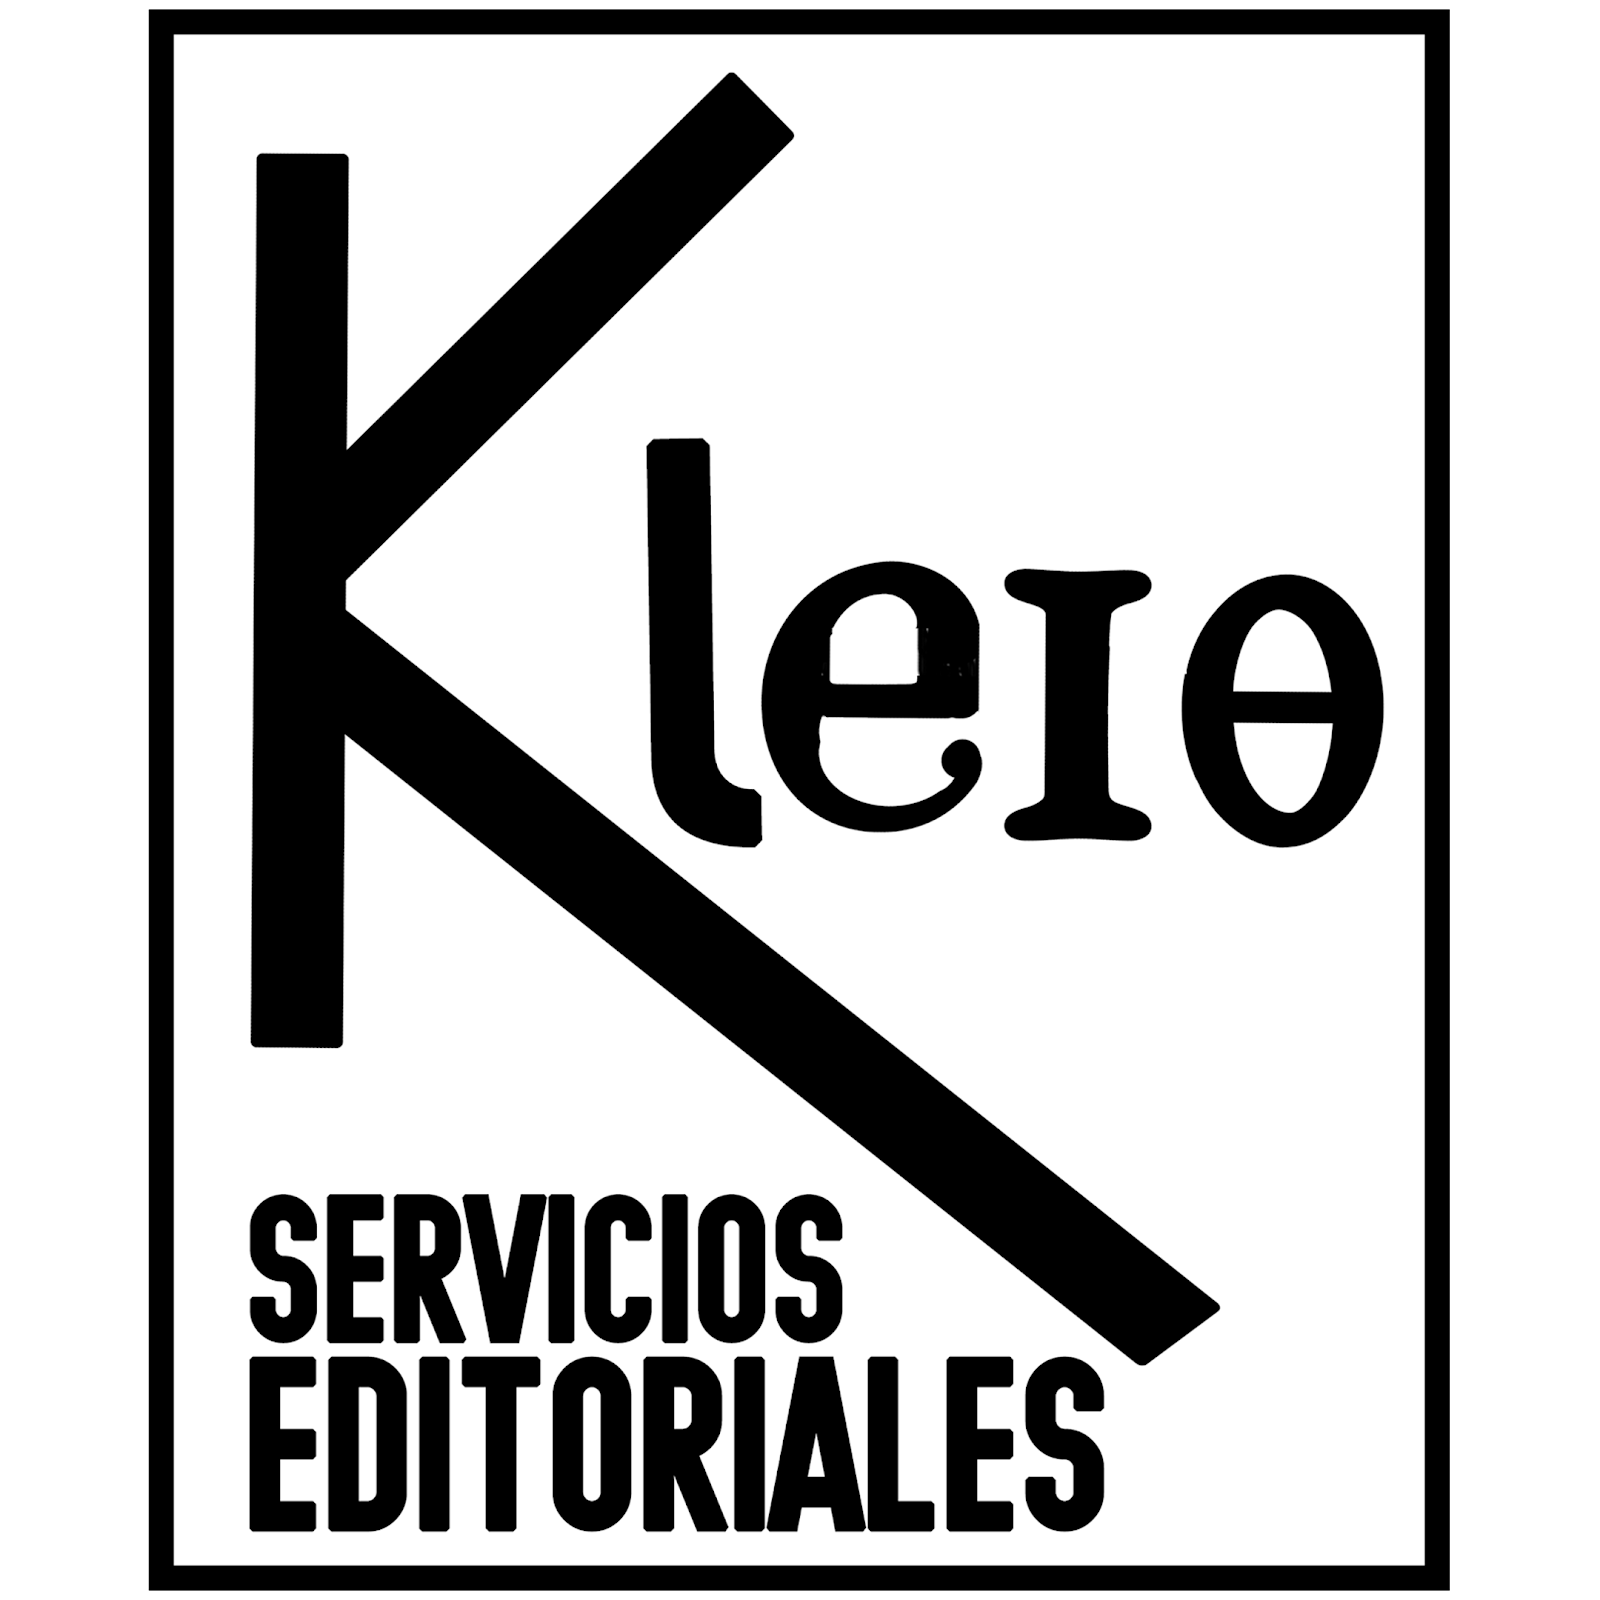 Kleio Academia - Servicios Editoriales